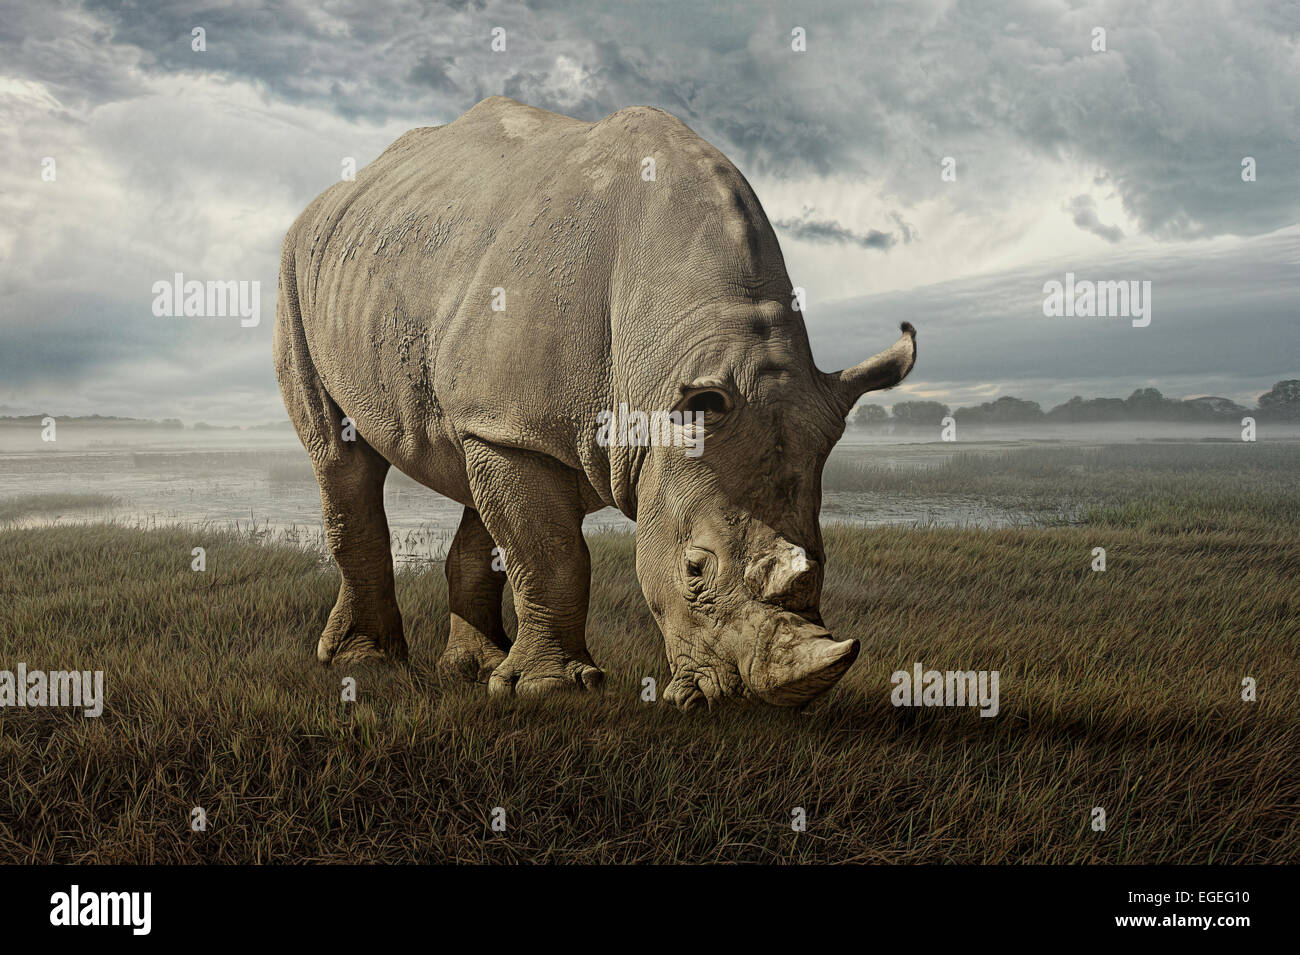 The white rhino on the plains Stock Photo